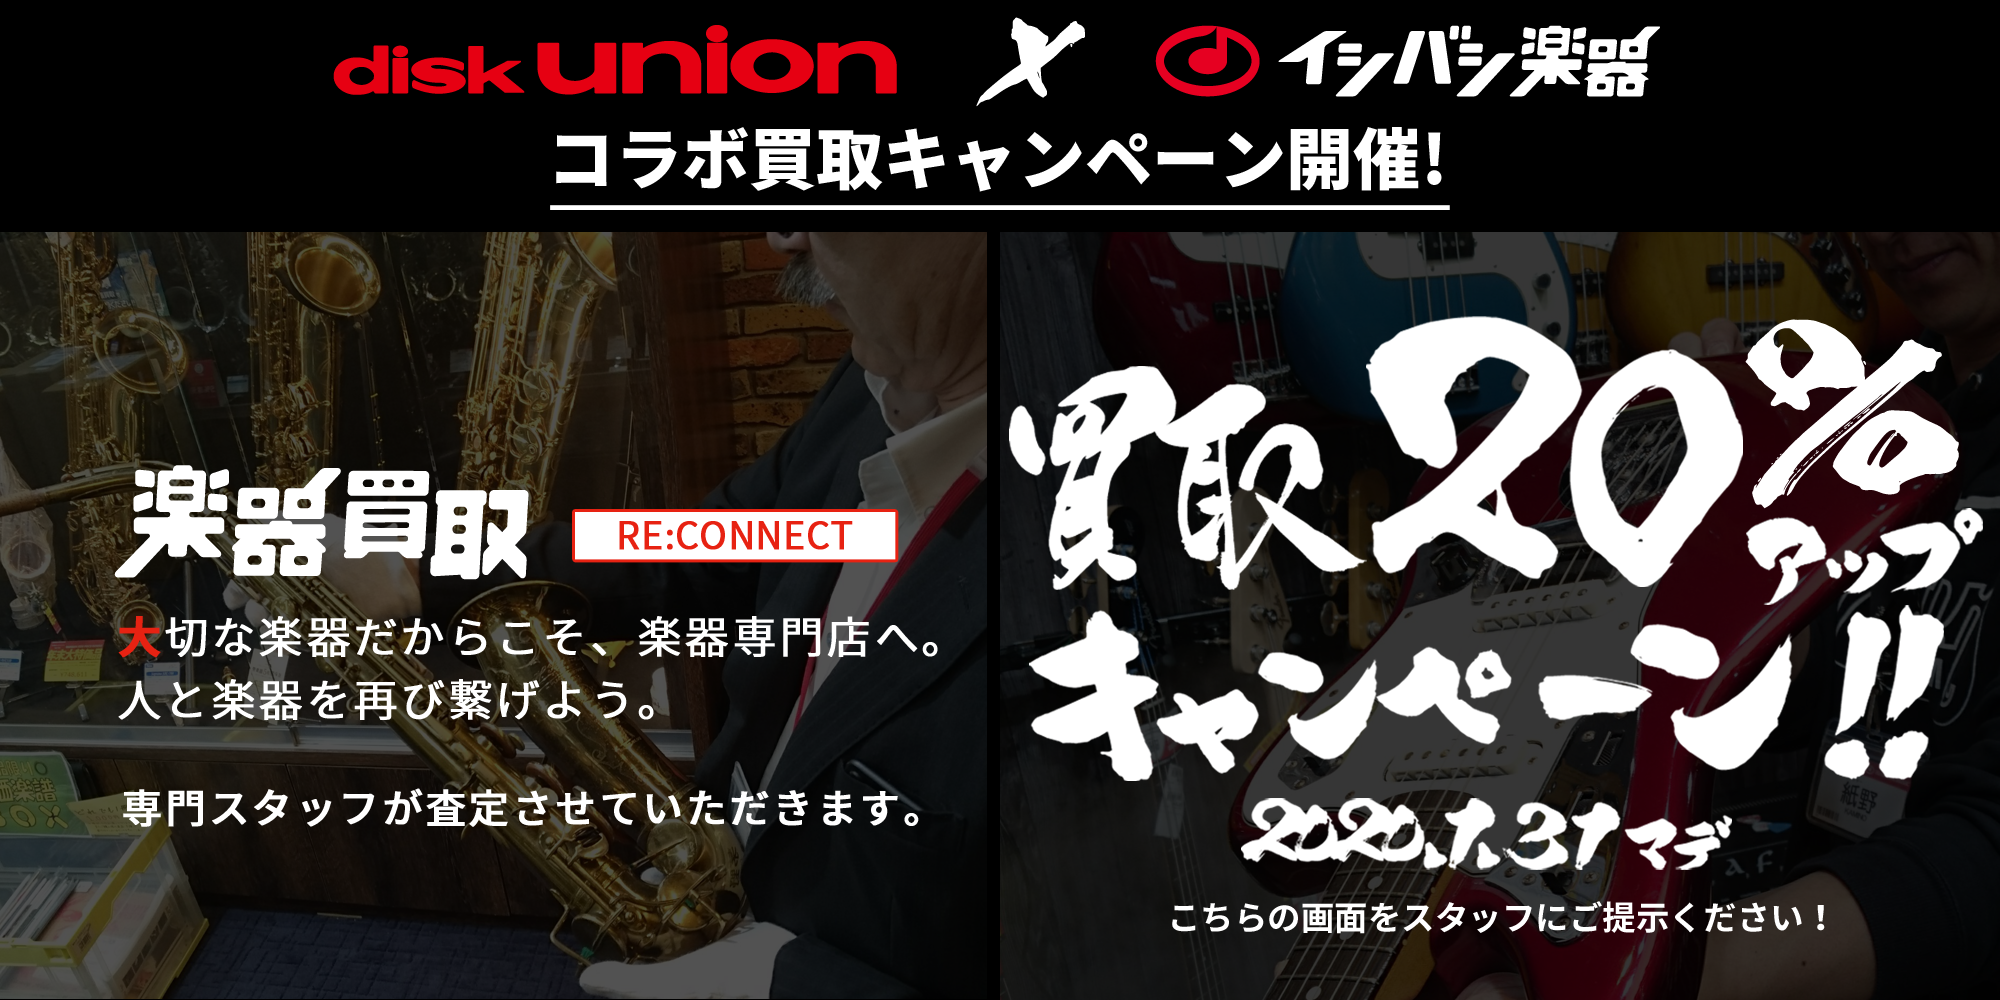 『イシバシ楽器』と『ディスクユニオン』がコラボキャンペーン開催! 楽器買取20%アップキャンペーン!